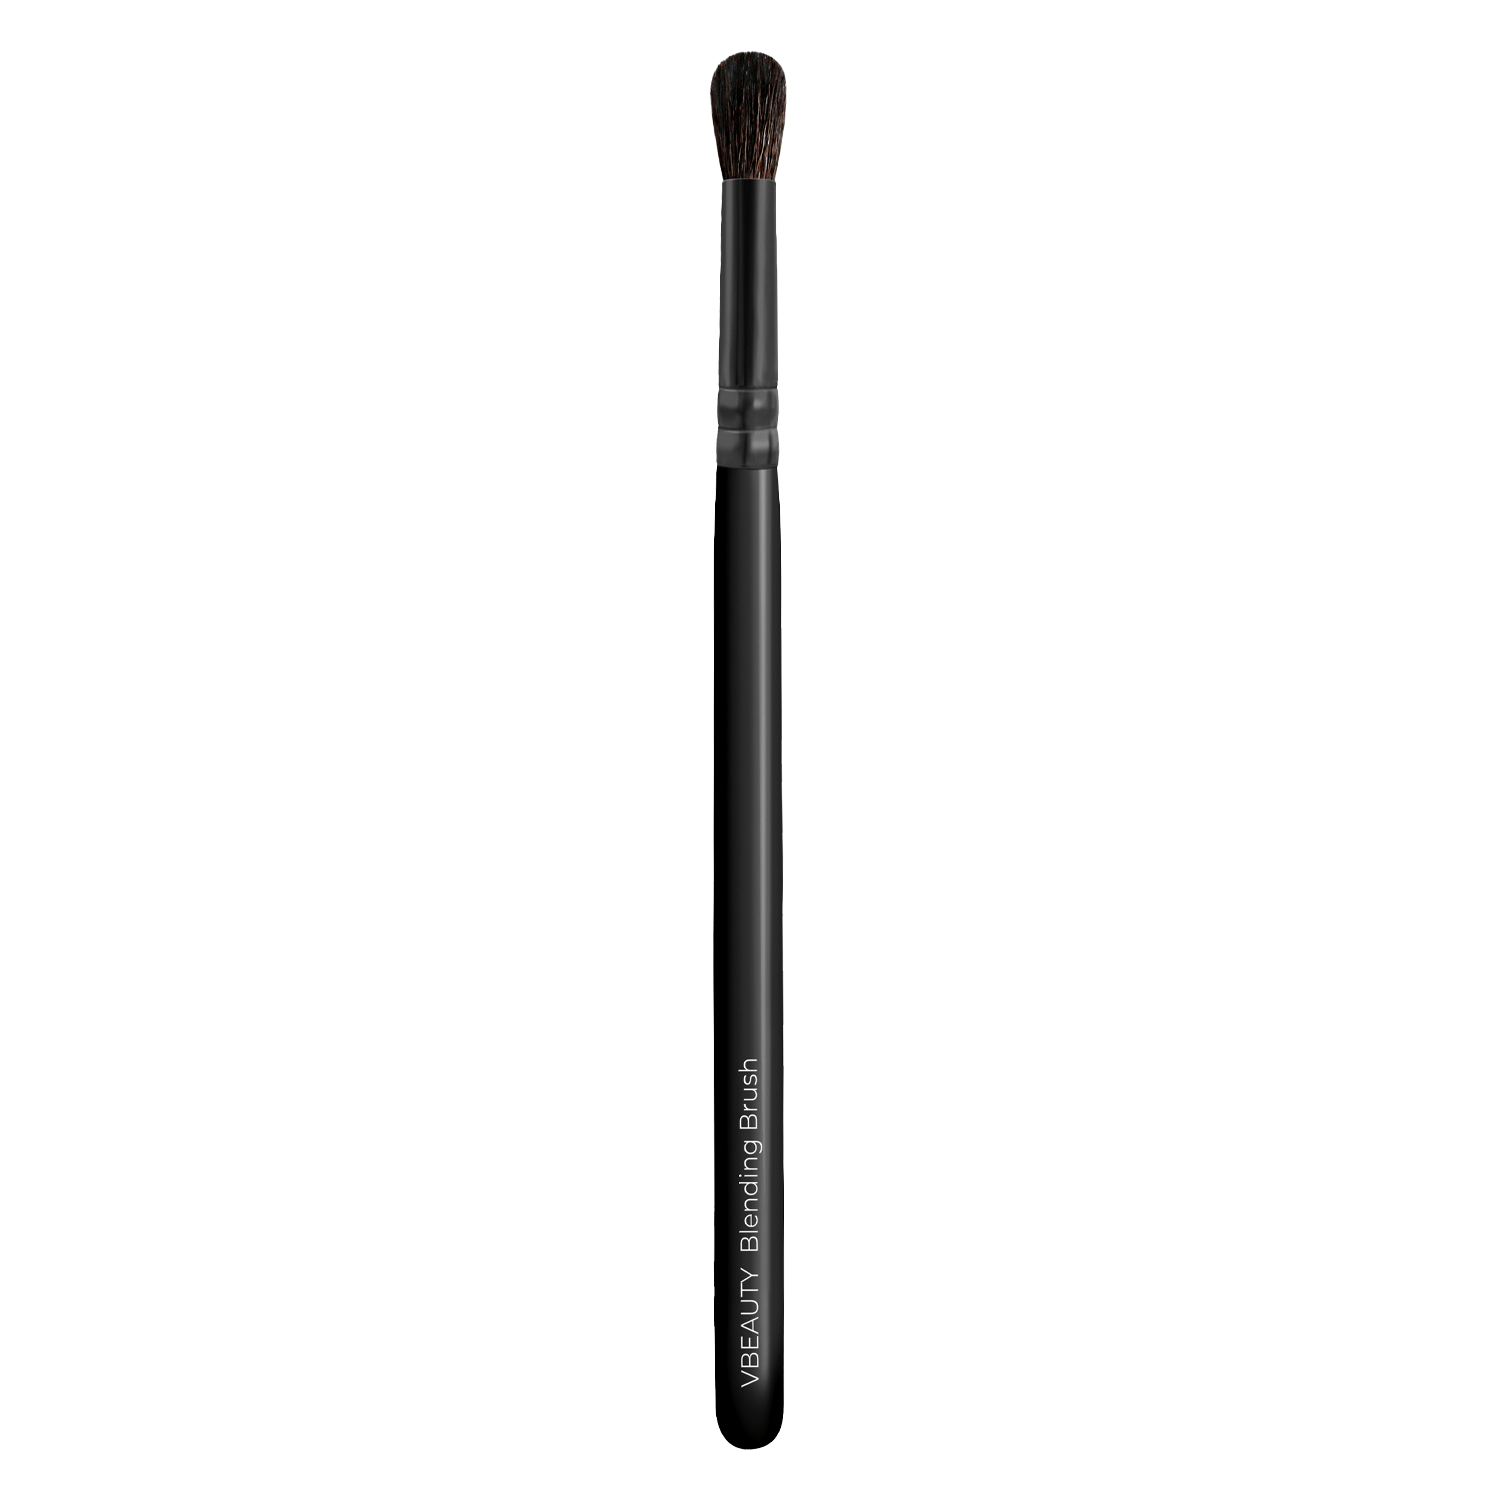 Produktbild von VBEAUTY Make Up - Blending Brush